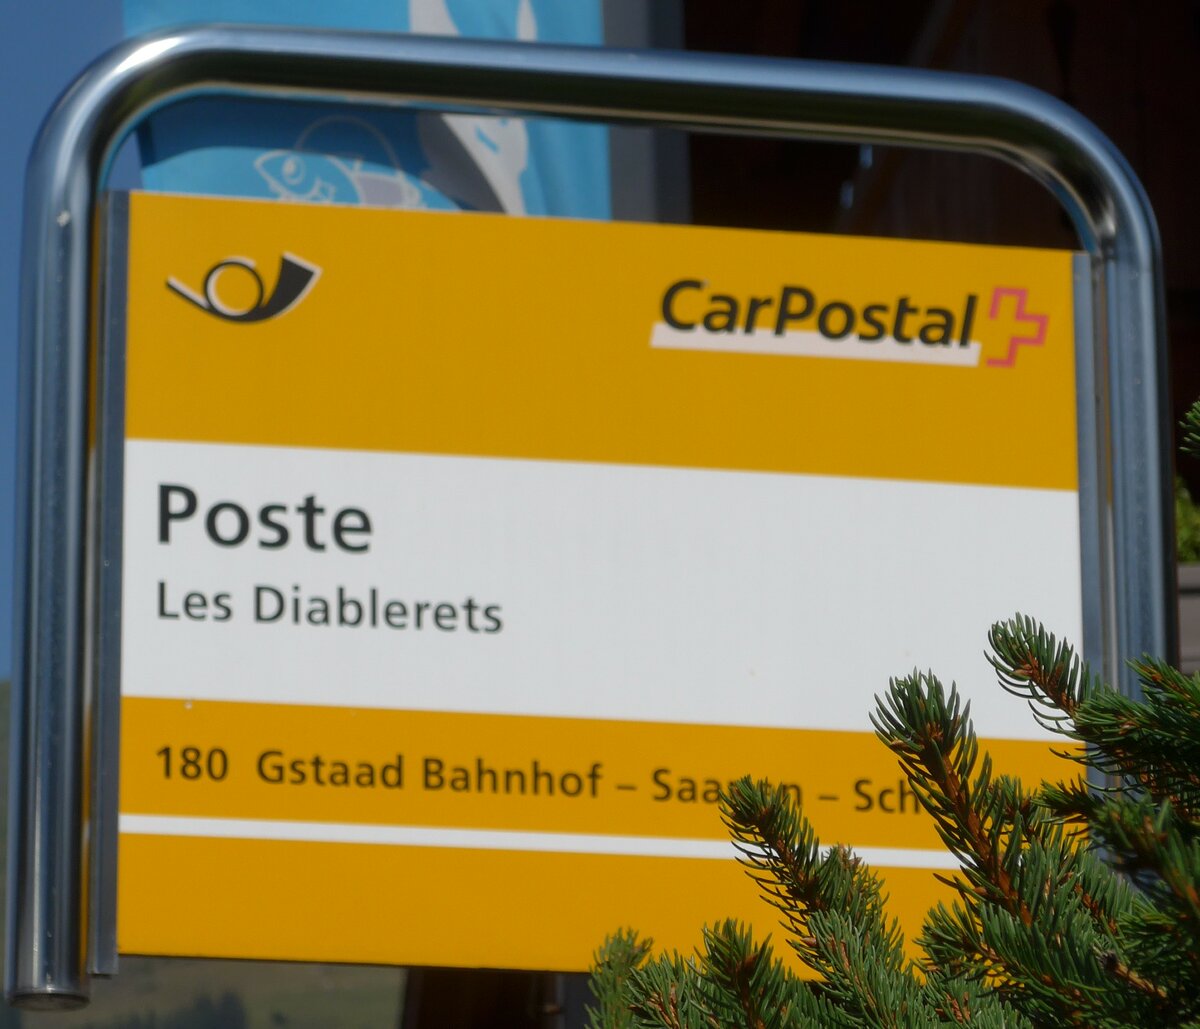 (183'979) - PostAuto-Haltestellenschild - Les Diablerets, Poste - am 24. August 2017